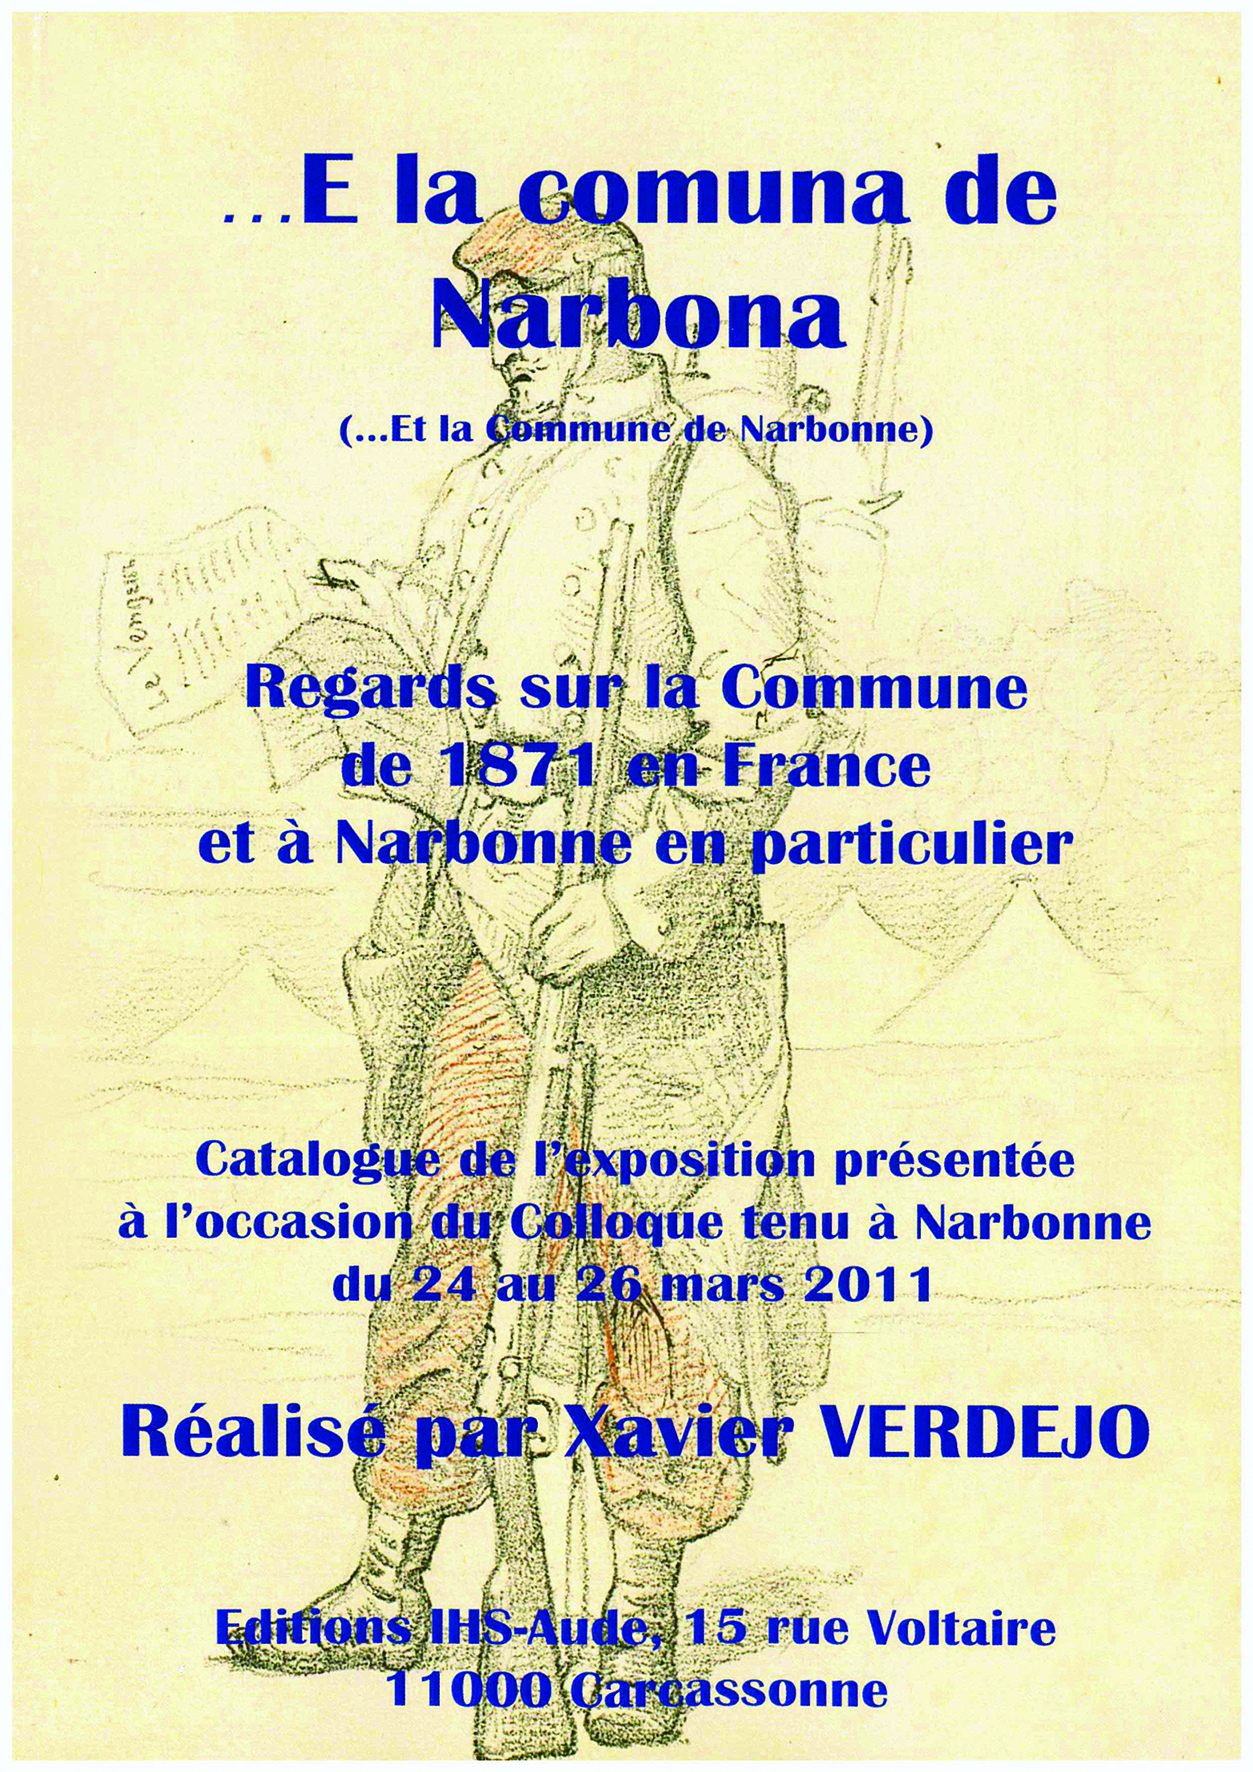 Catalogue de l'exposition sur la Commune de Narbonne en 2011